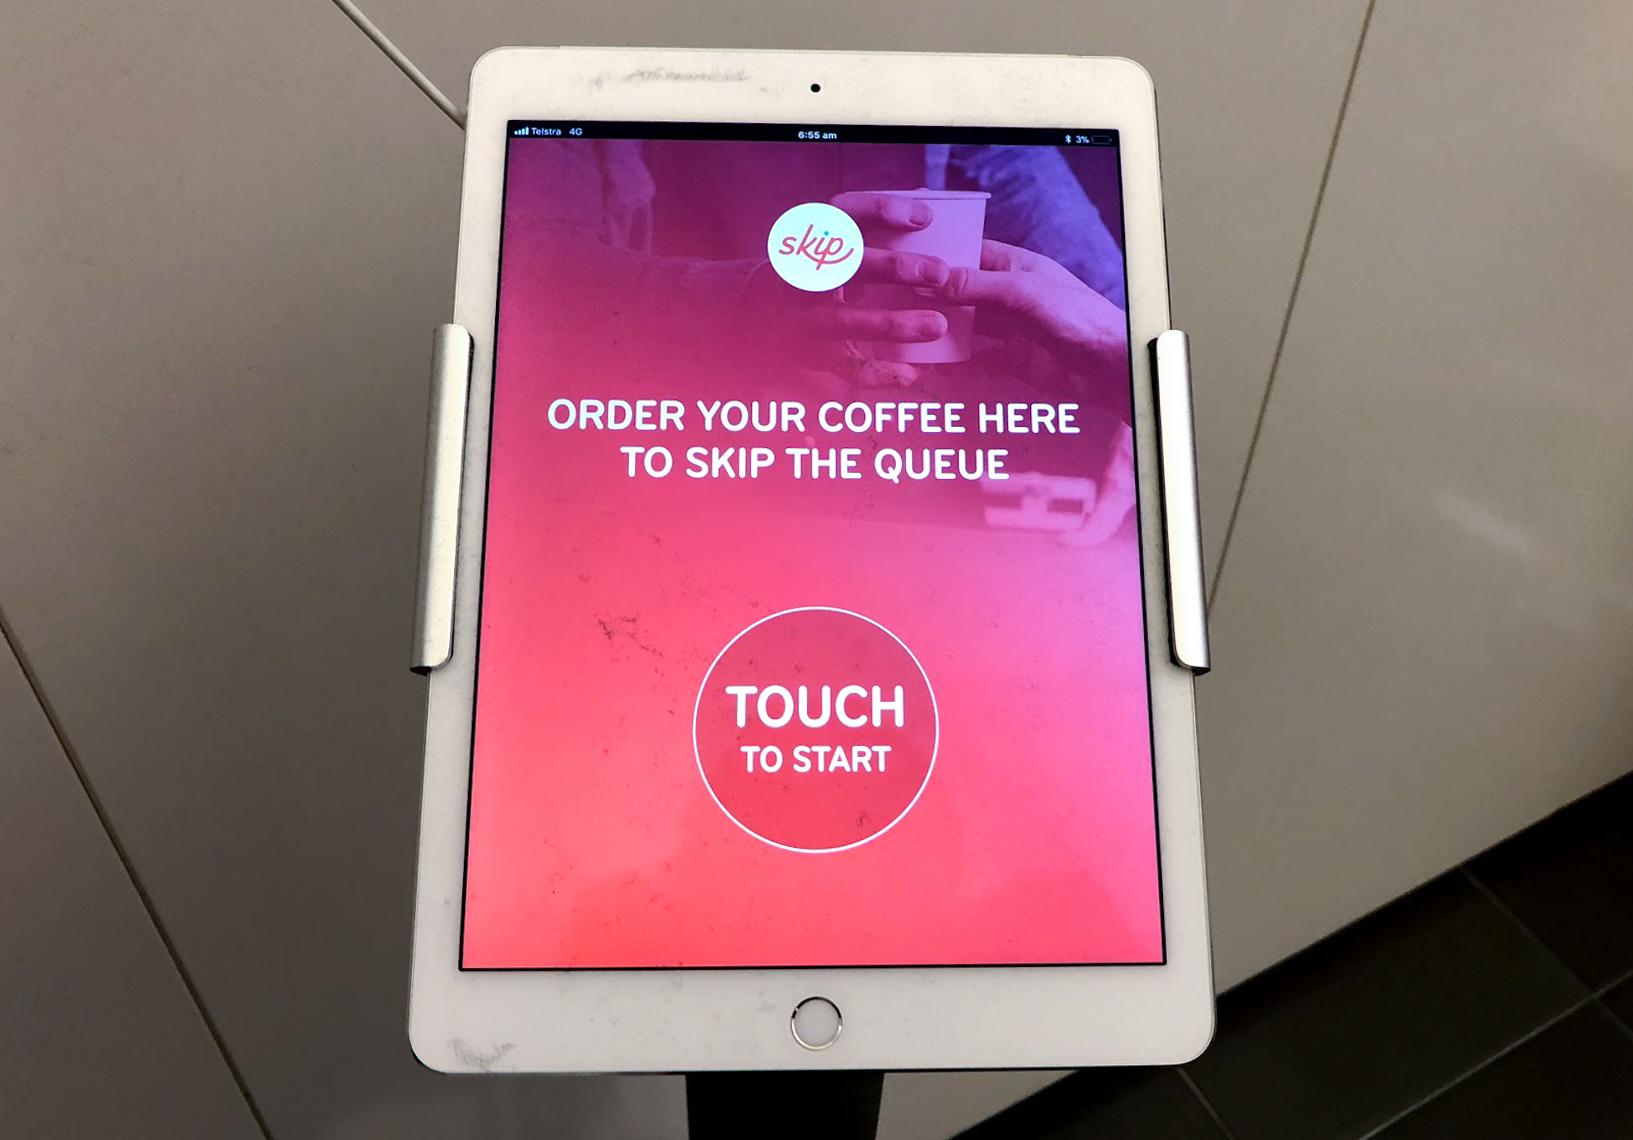 Qantas Club Sydney tablet to pre-order coffee